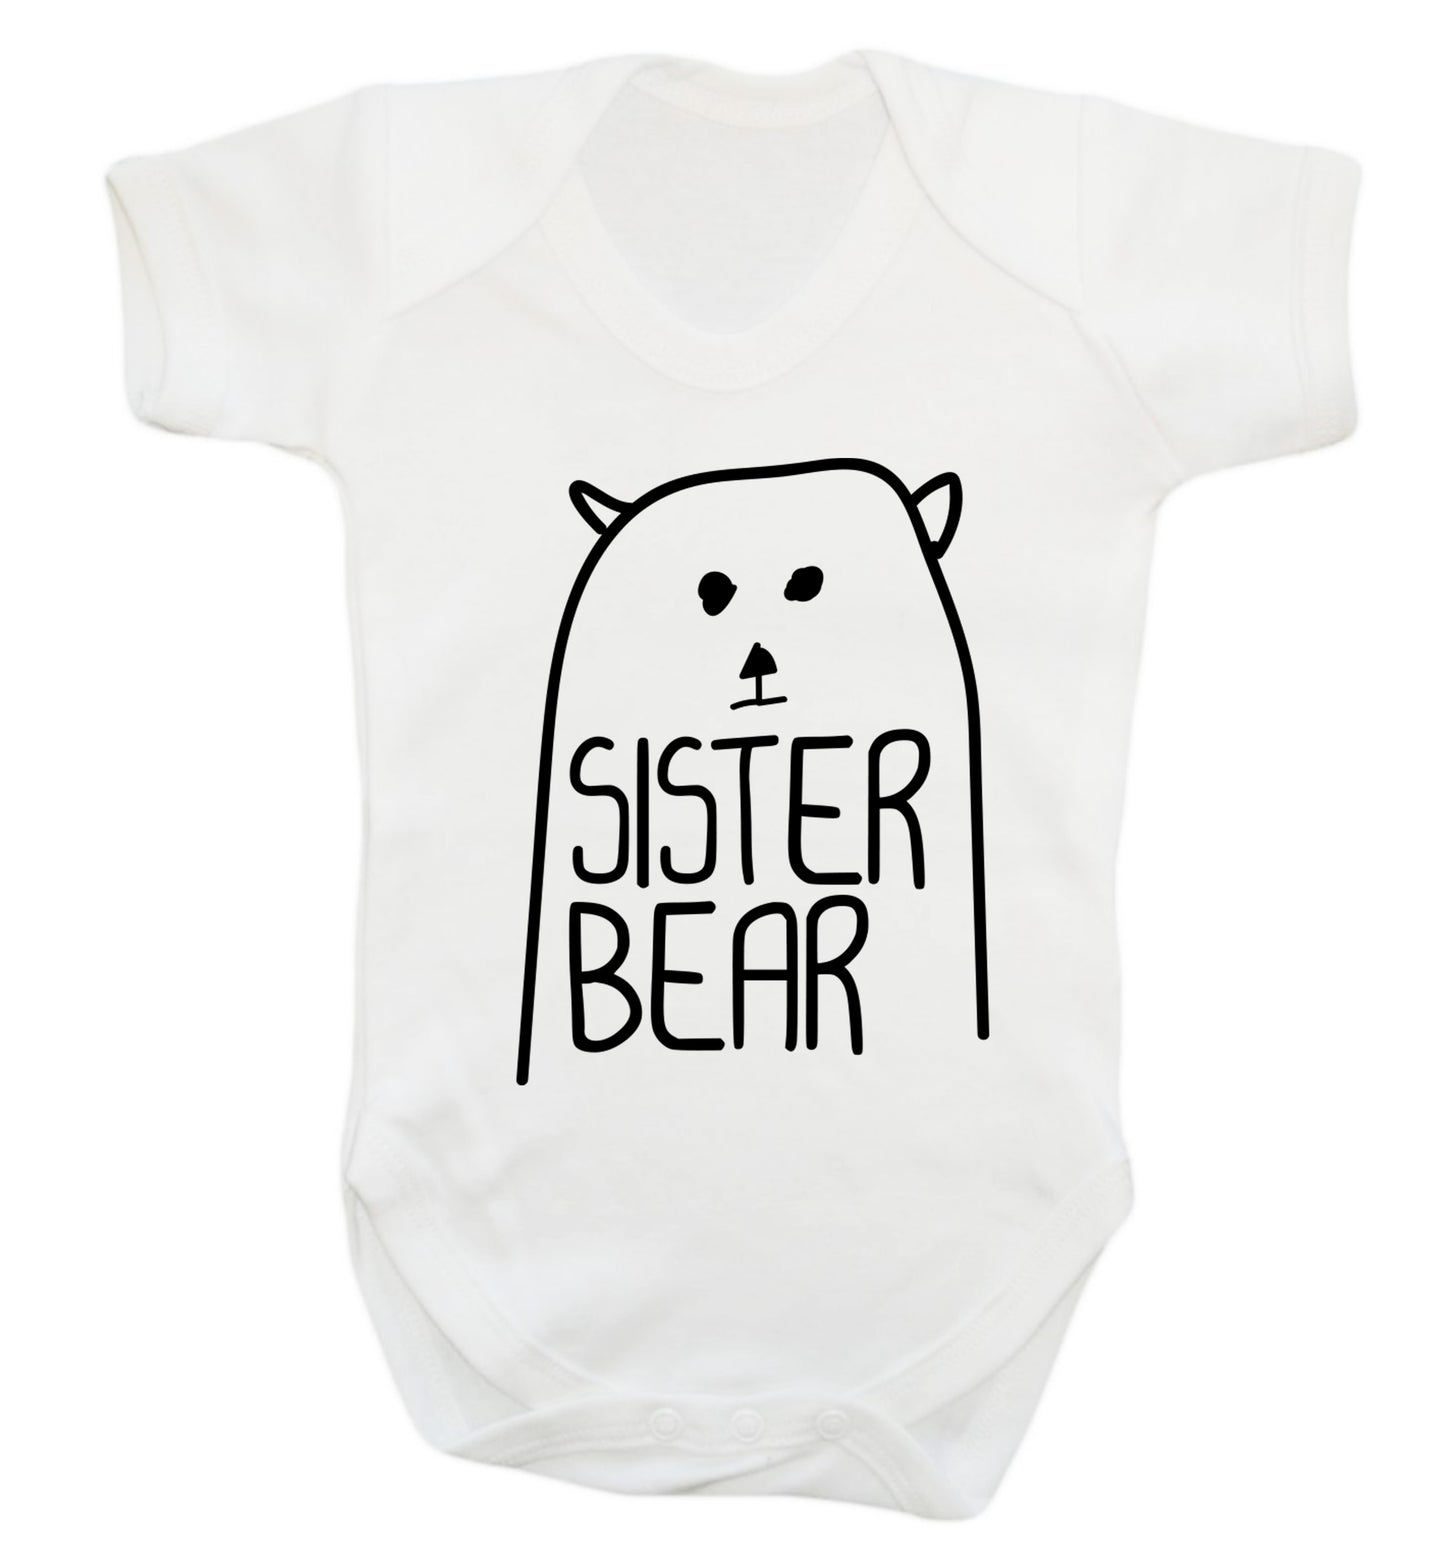 Sister bear Baby Vest white 18-24 months